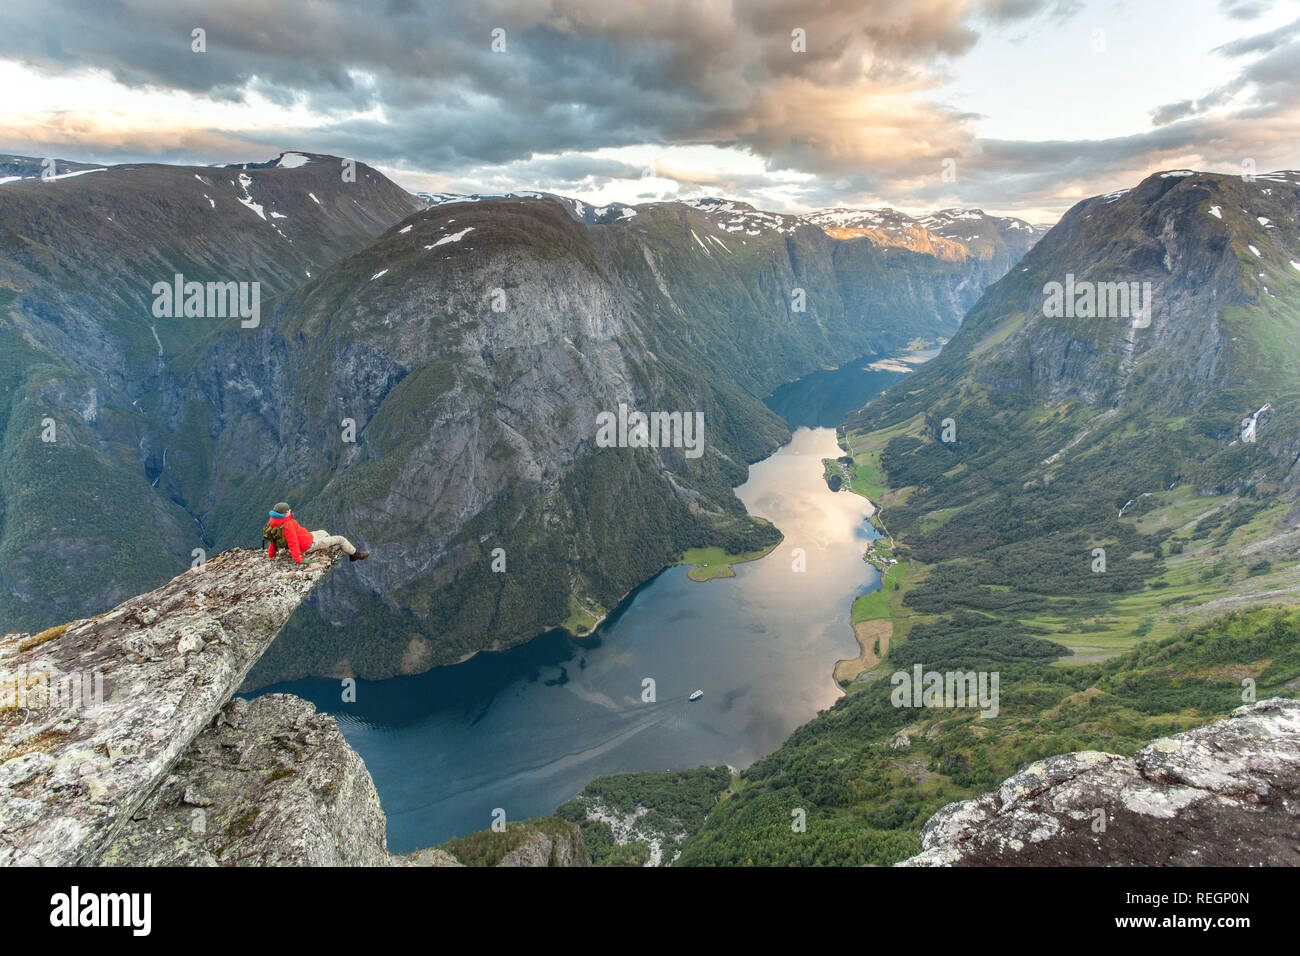 Un escursionista godendo di una magnifica vista del fiordo norvegese vicino a Gudvangen. Unesco World Heritage Site di Naeroyfjord, Norvegia. Foto Stock